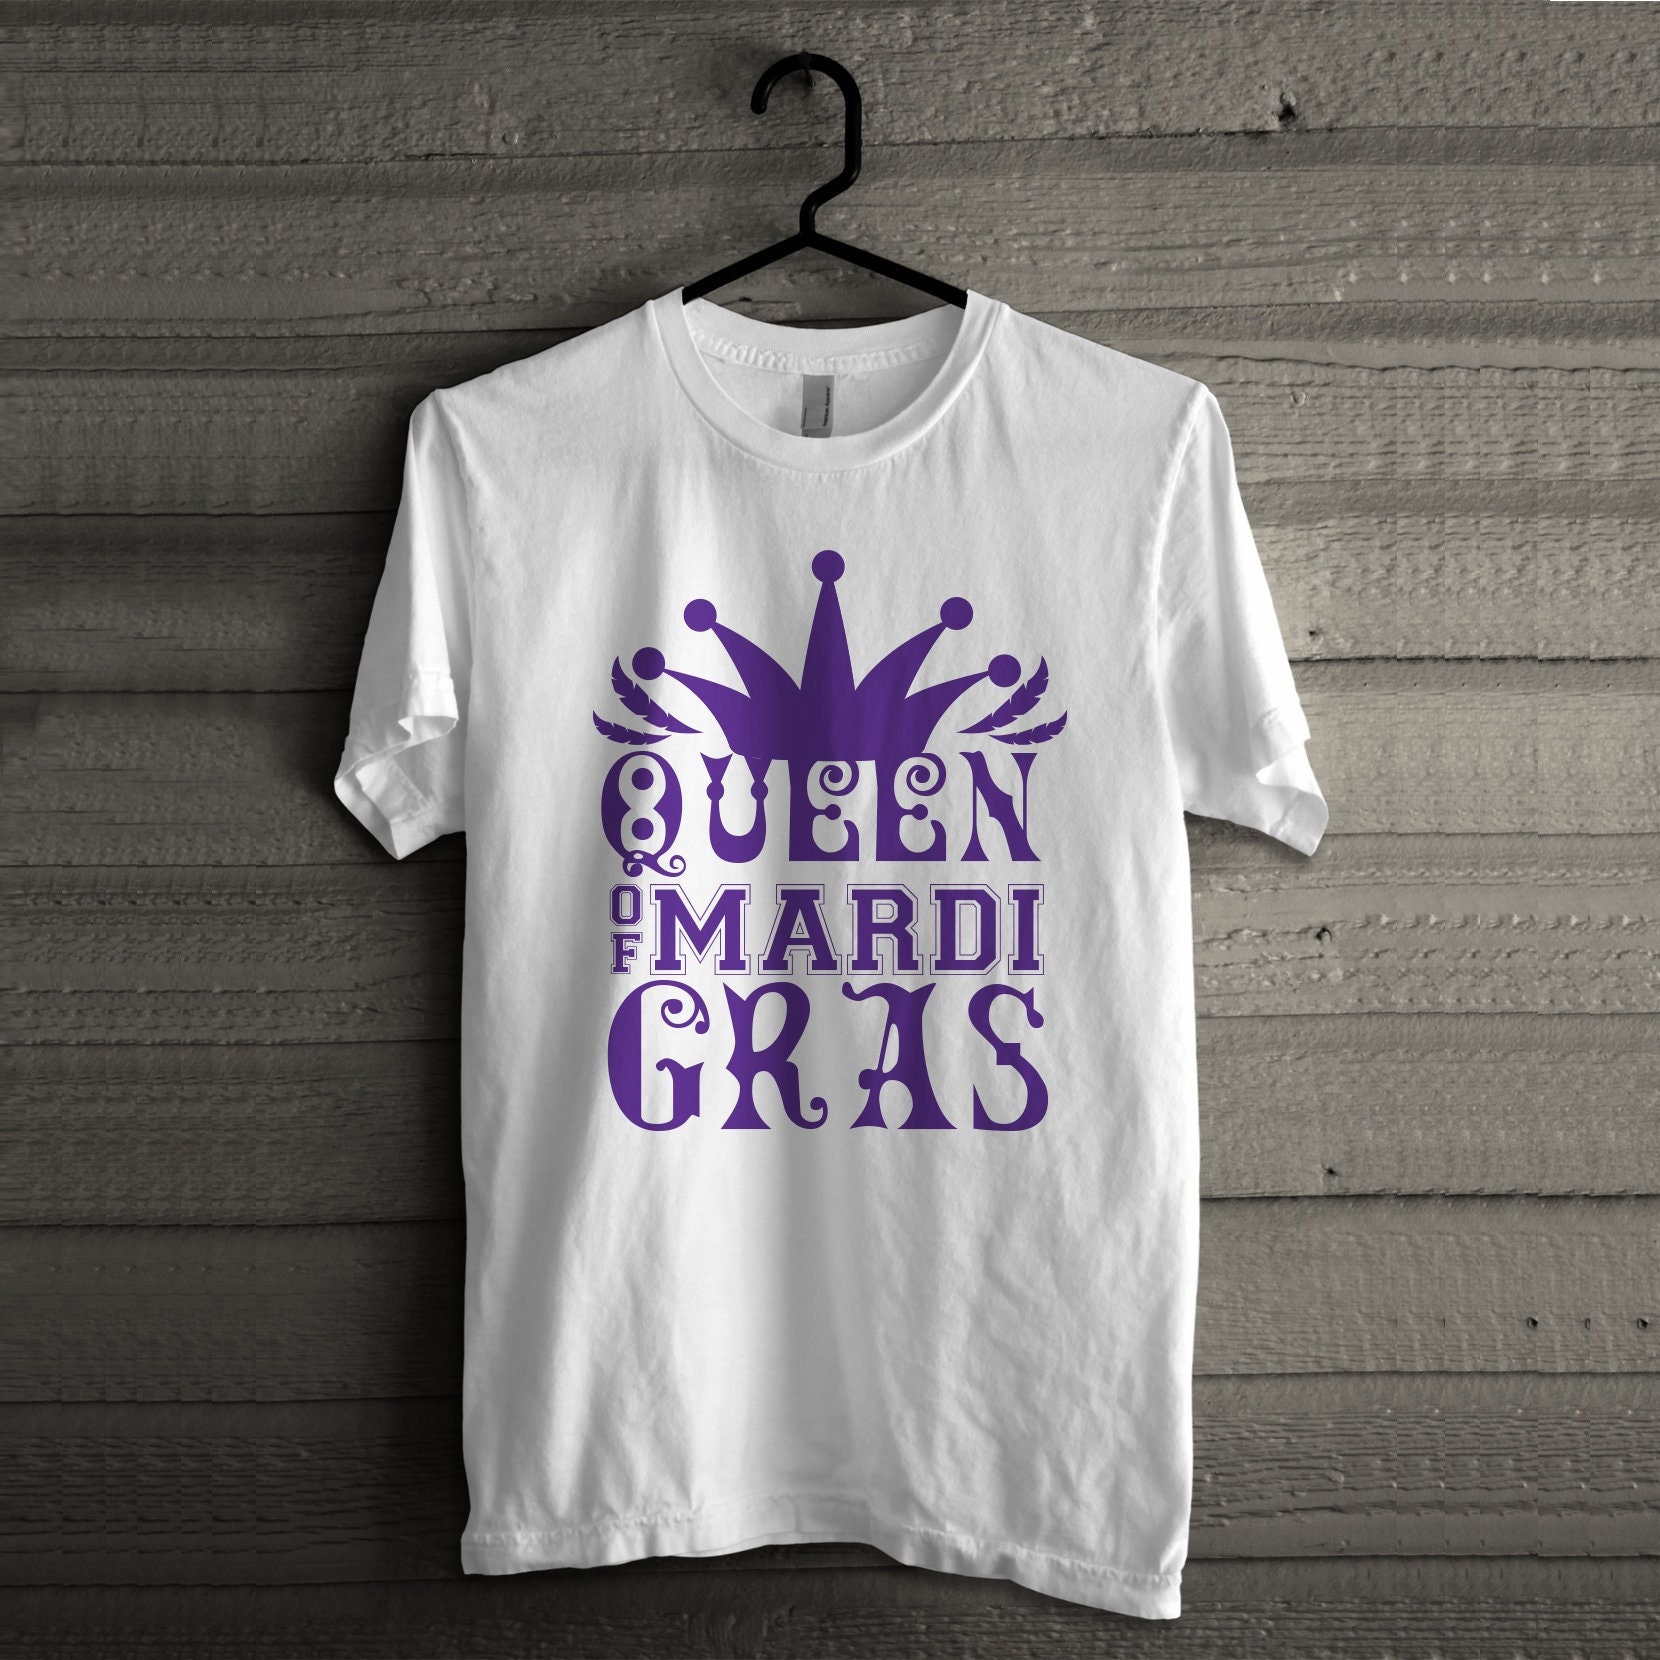 Discover Queen of Mardi Gras Tee, Queen of Mardi Gras Parade T-Shirt